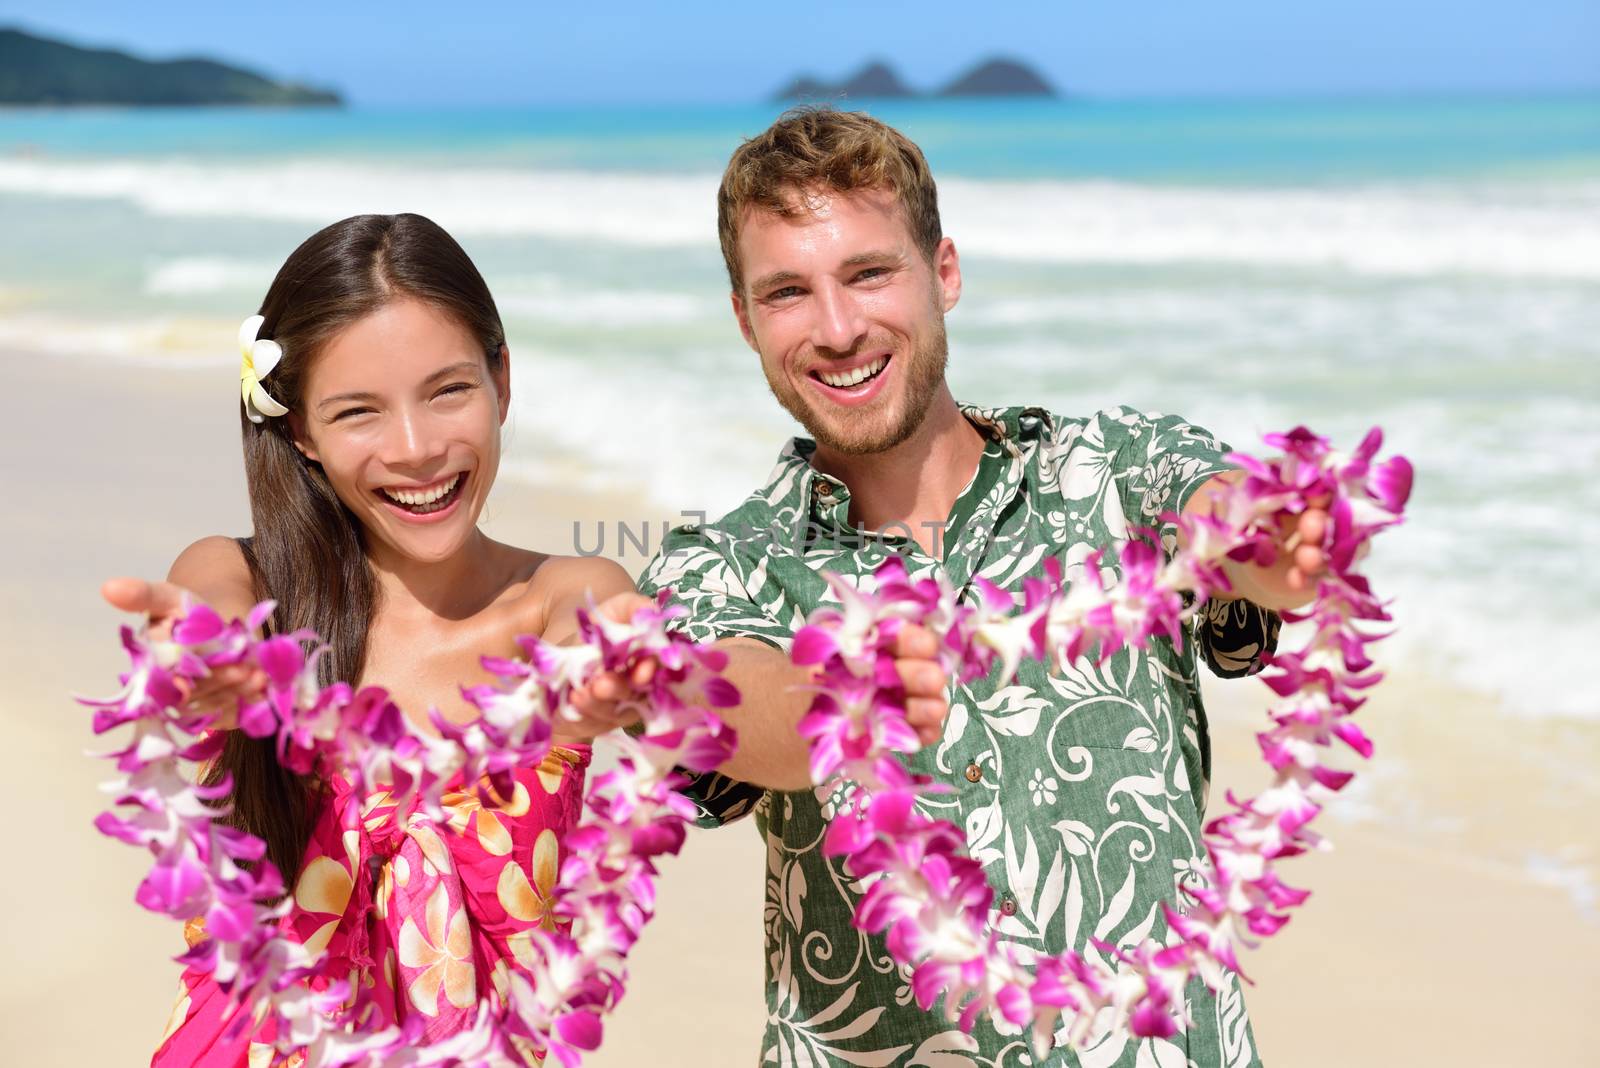 Welcome to Hawaii - Hawaiian people showing lei by Maridav